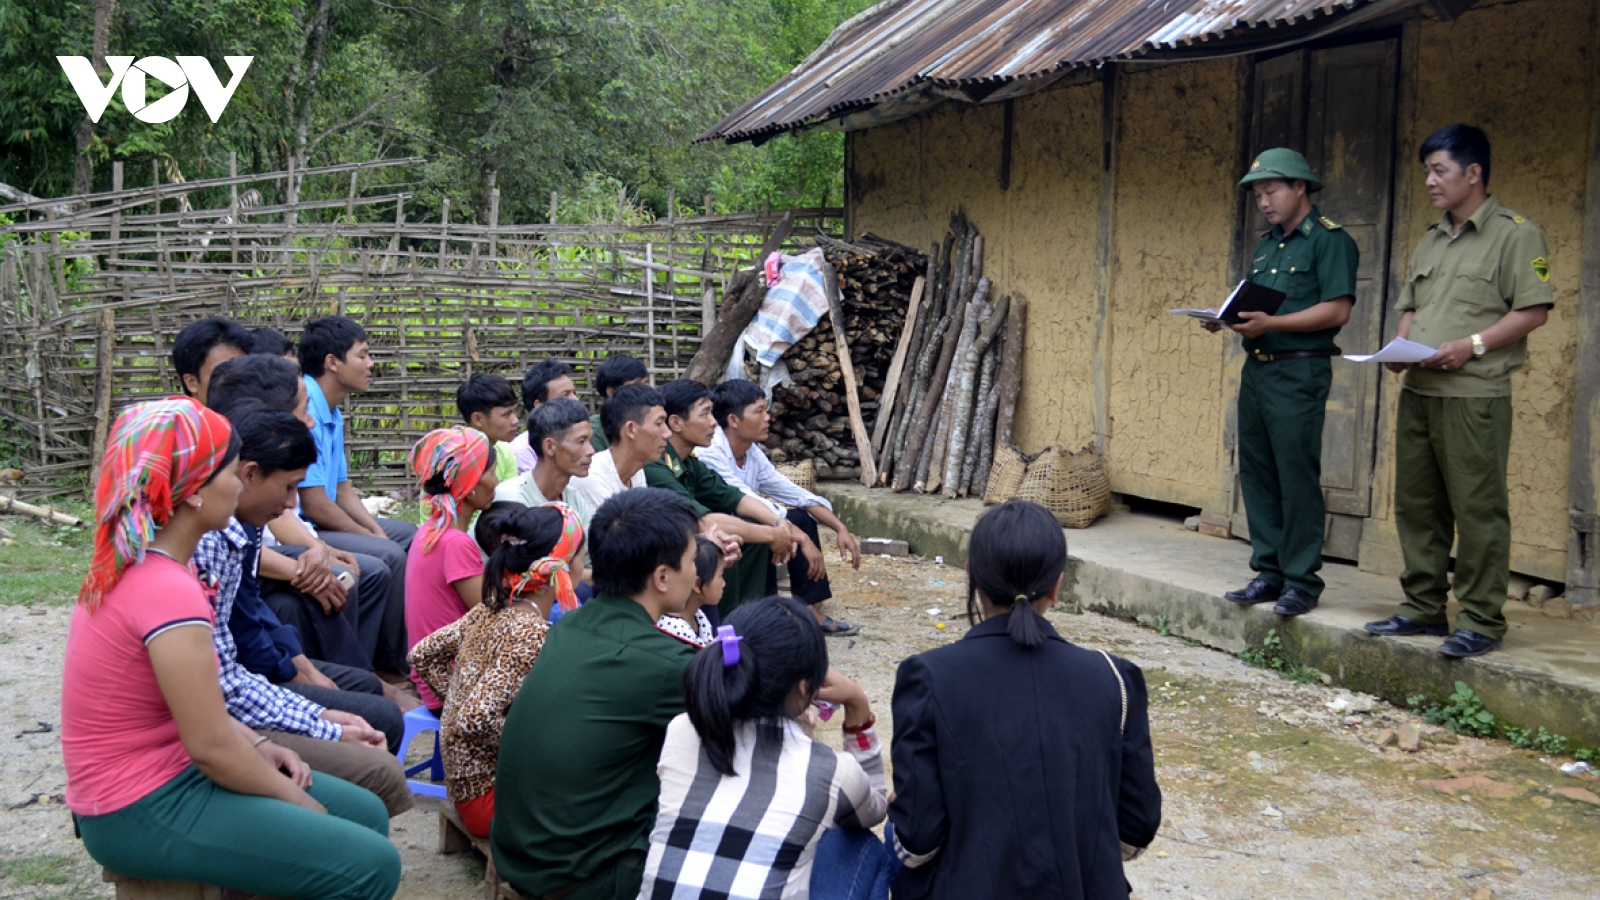 Tuyên truyền bầu cử ở Lai Châu: "Người biết truyền đạt cho người chưa biết"